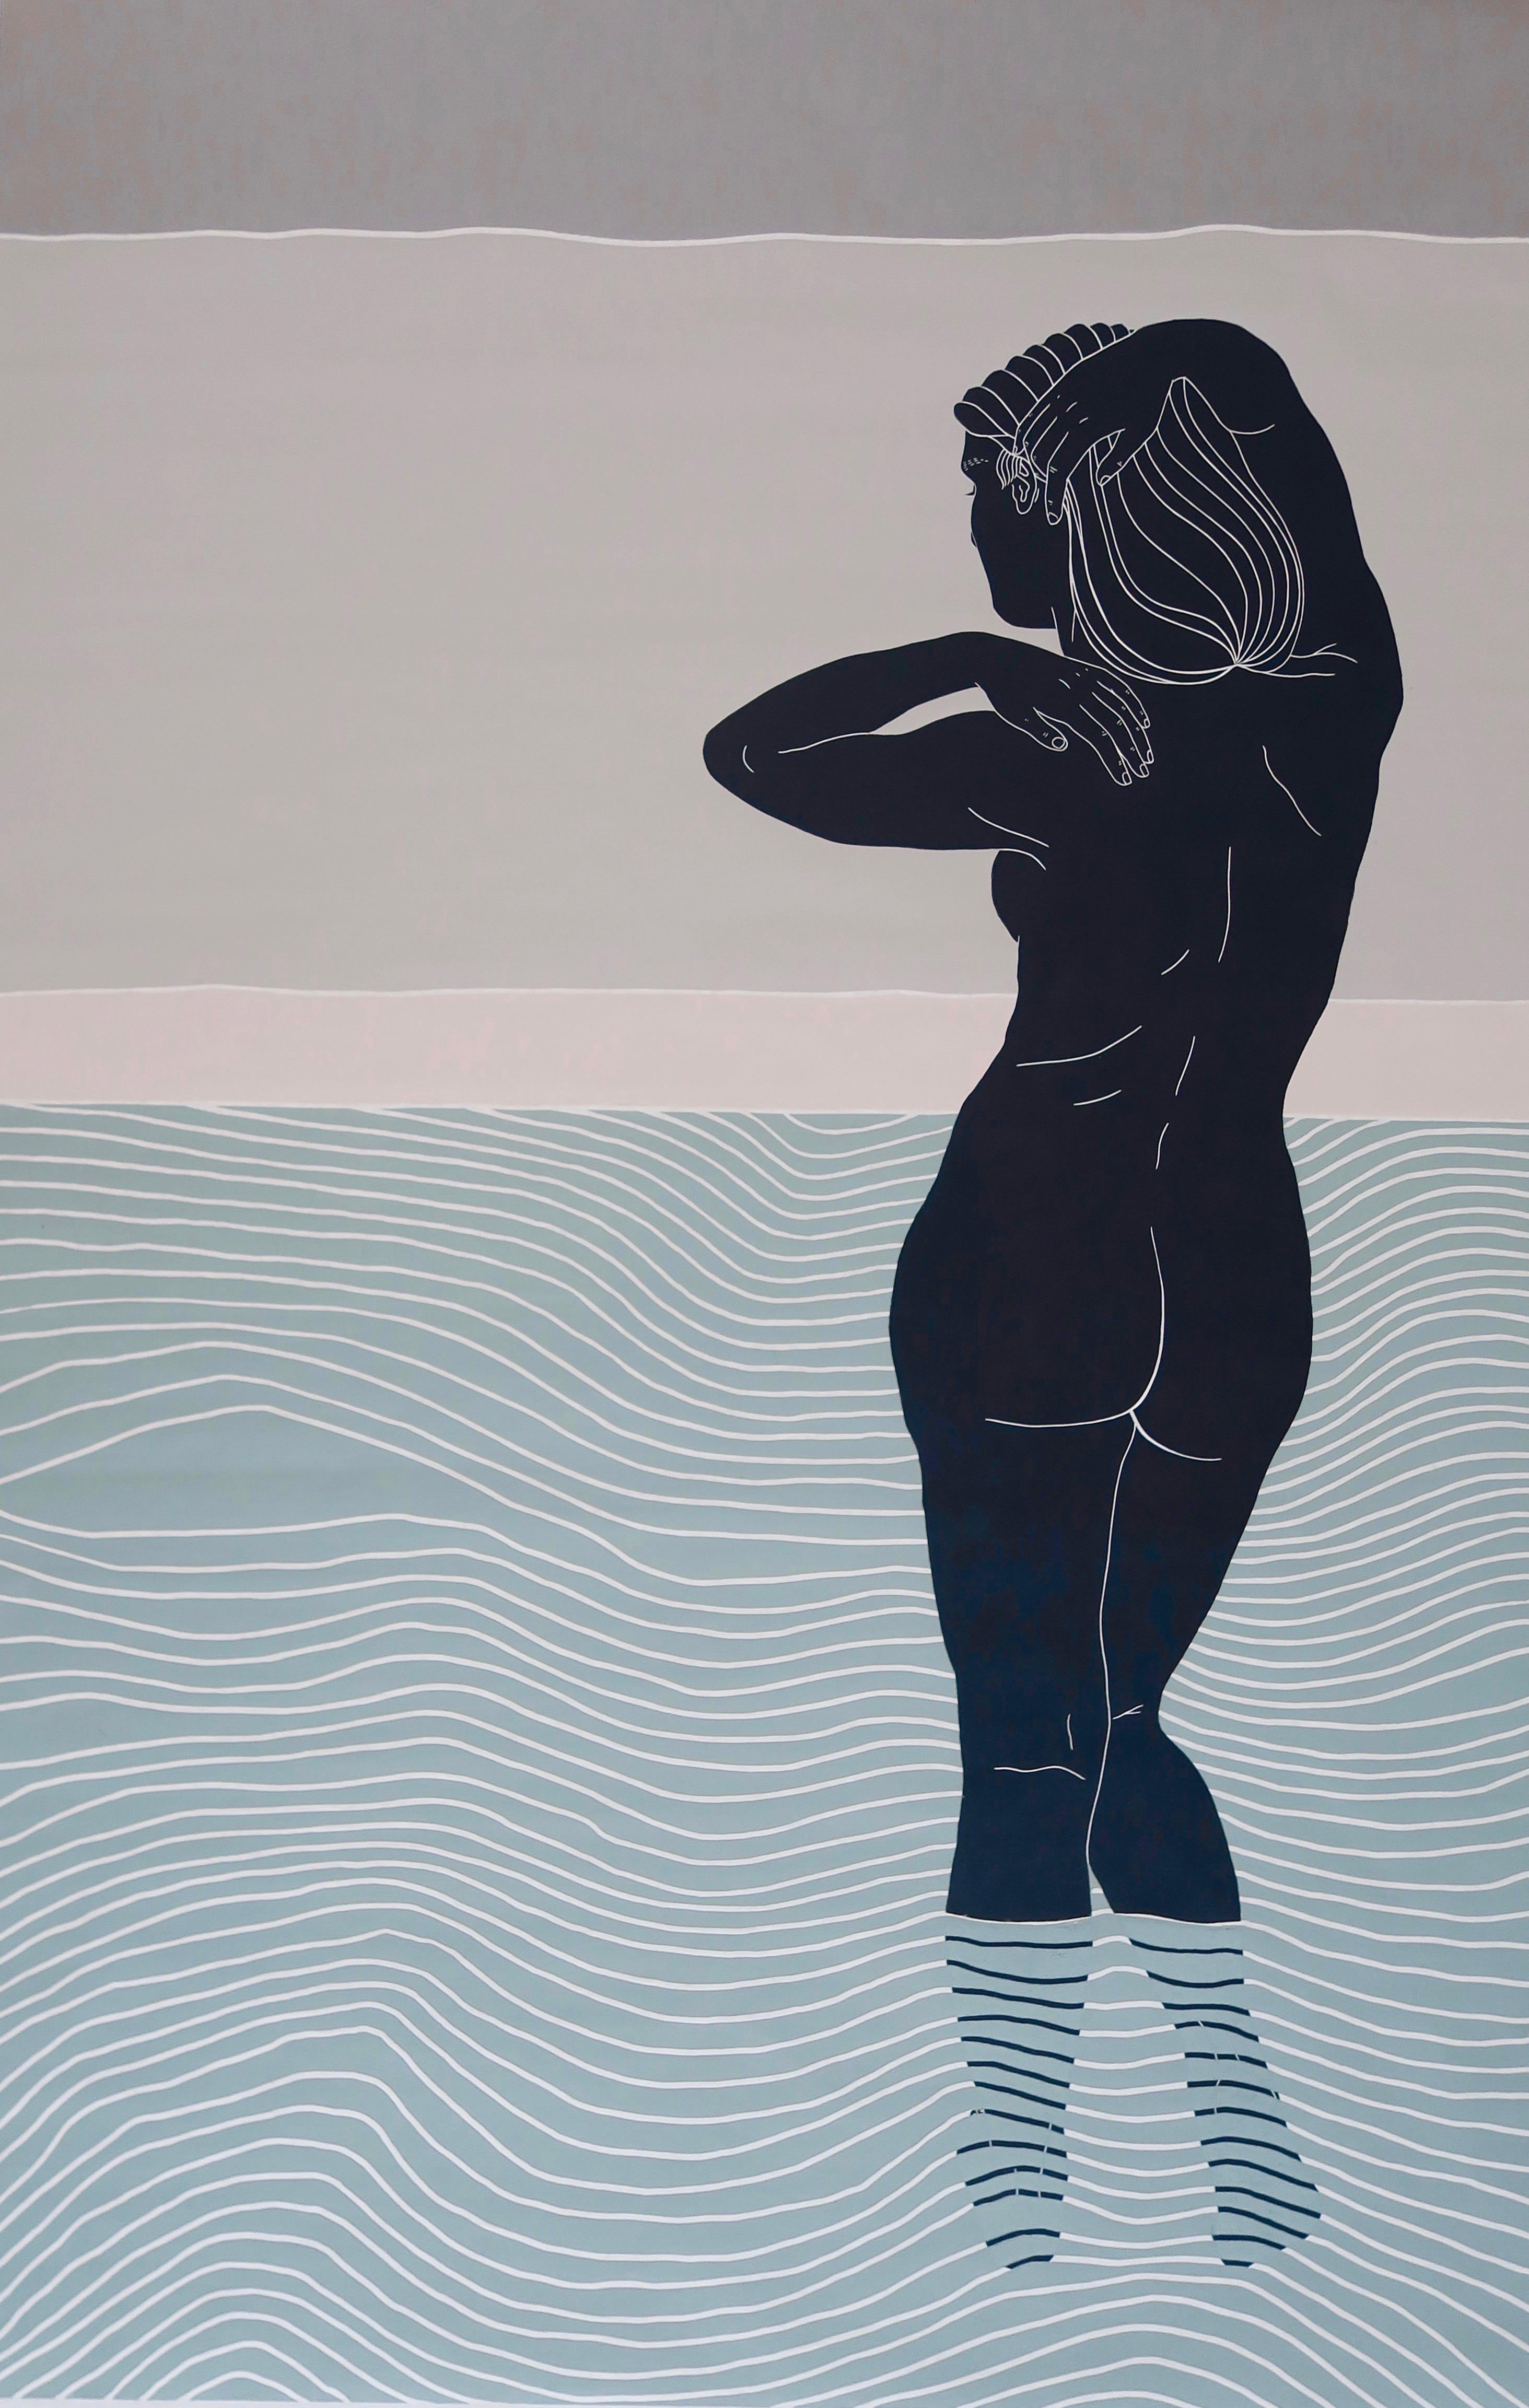 Ellen Von Wiegands Werk zeugt von der Suche nach Selbstbewusstsein und Gelassenheit, da sie ihren eigenen nackten Körper für ihre stilisierten Drucke verwendet. In einer neuen Serie von großformatigen Linolschnitten in limitierter Auflage, die jetzt